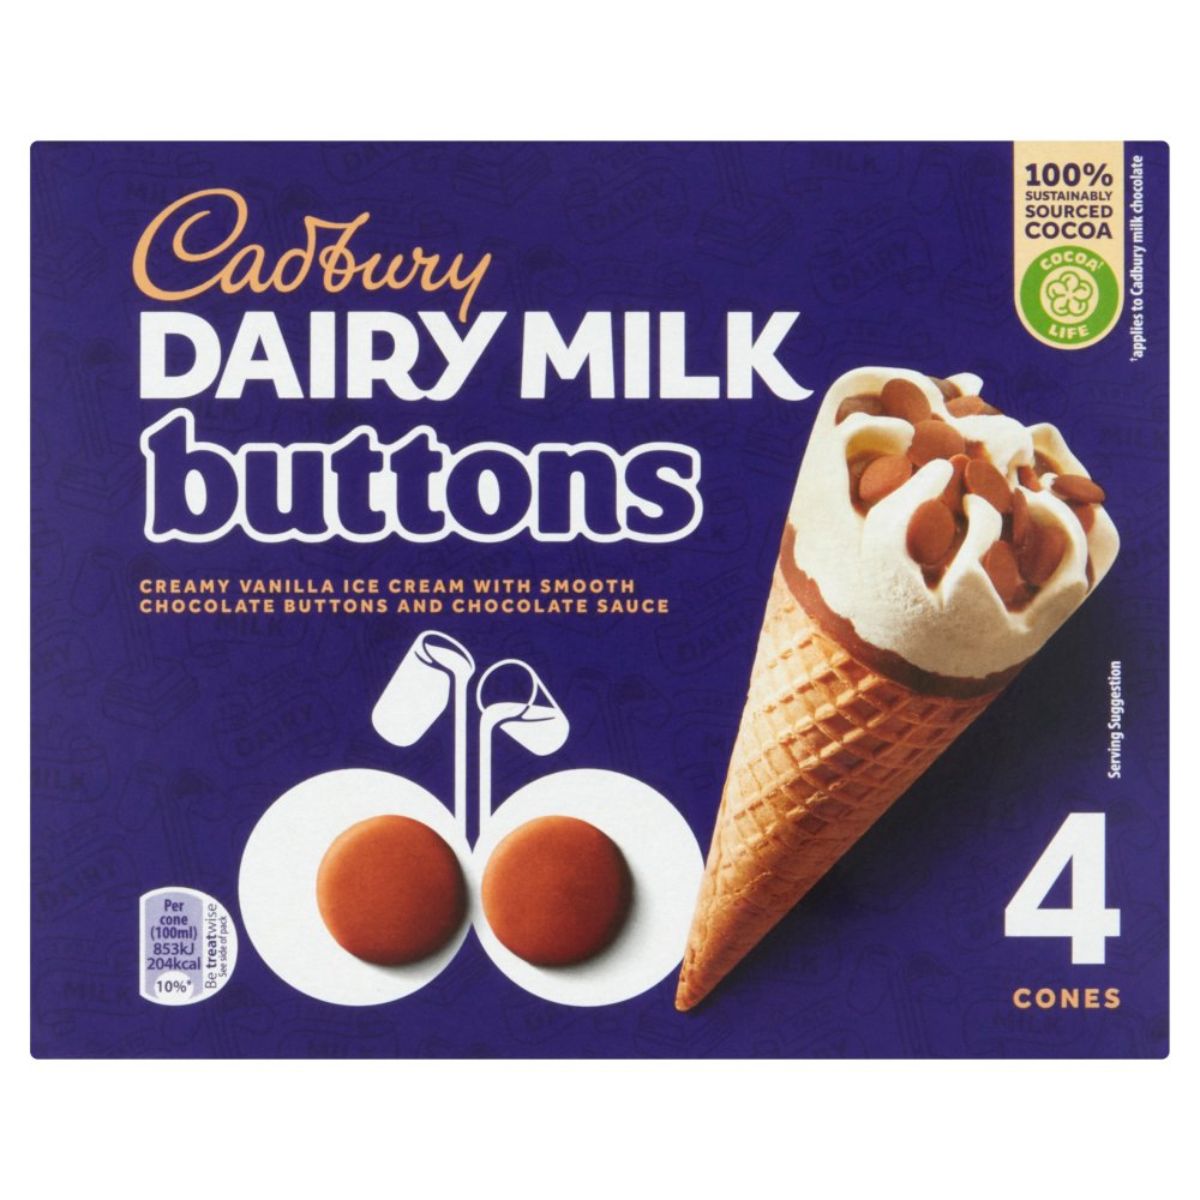 Cadbury - Dairy Milk Buttons 4 Cones - 400ml cones.